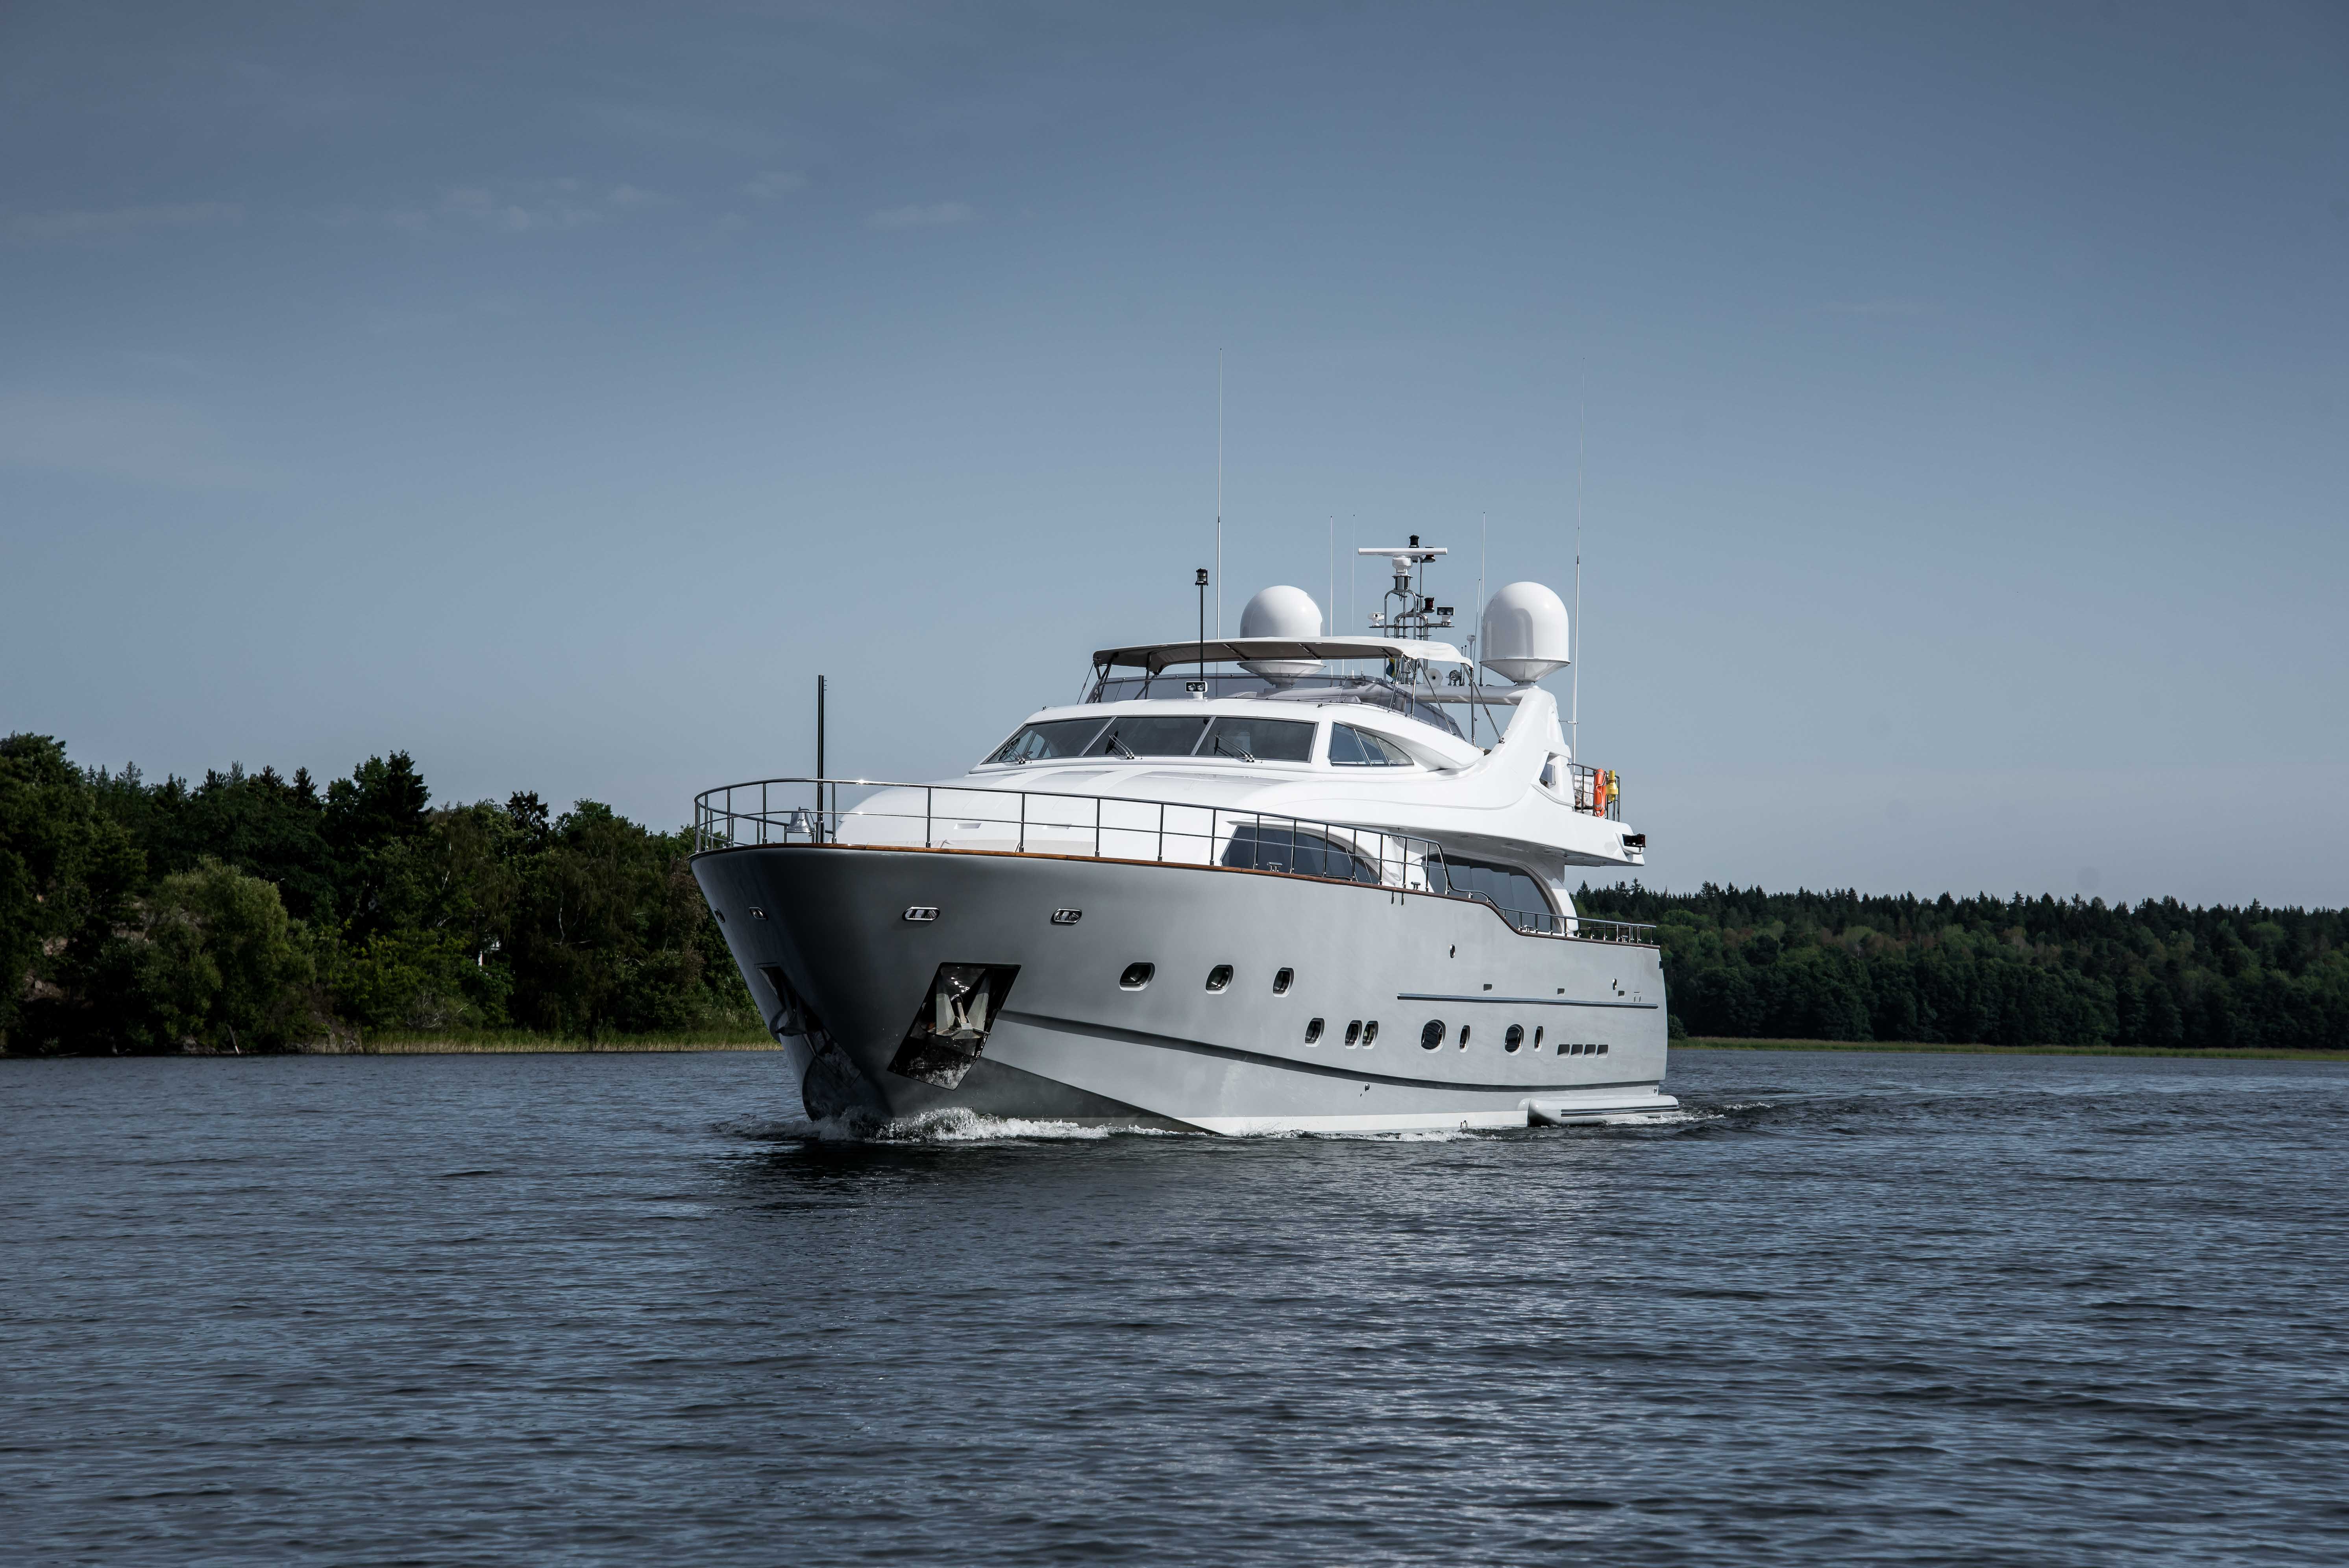 luxury yacht Queen of Sheba underway